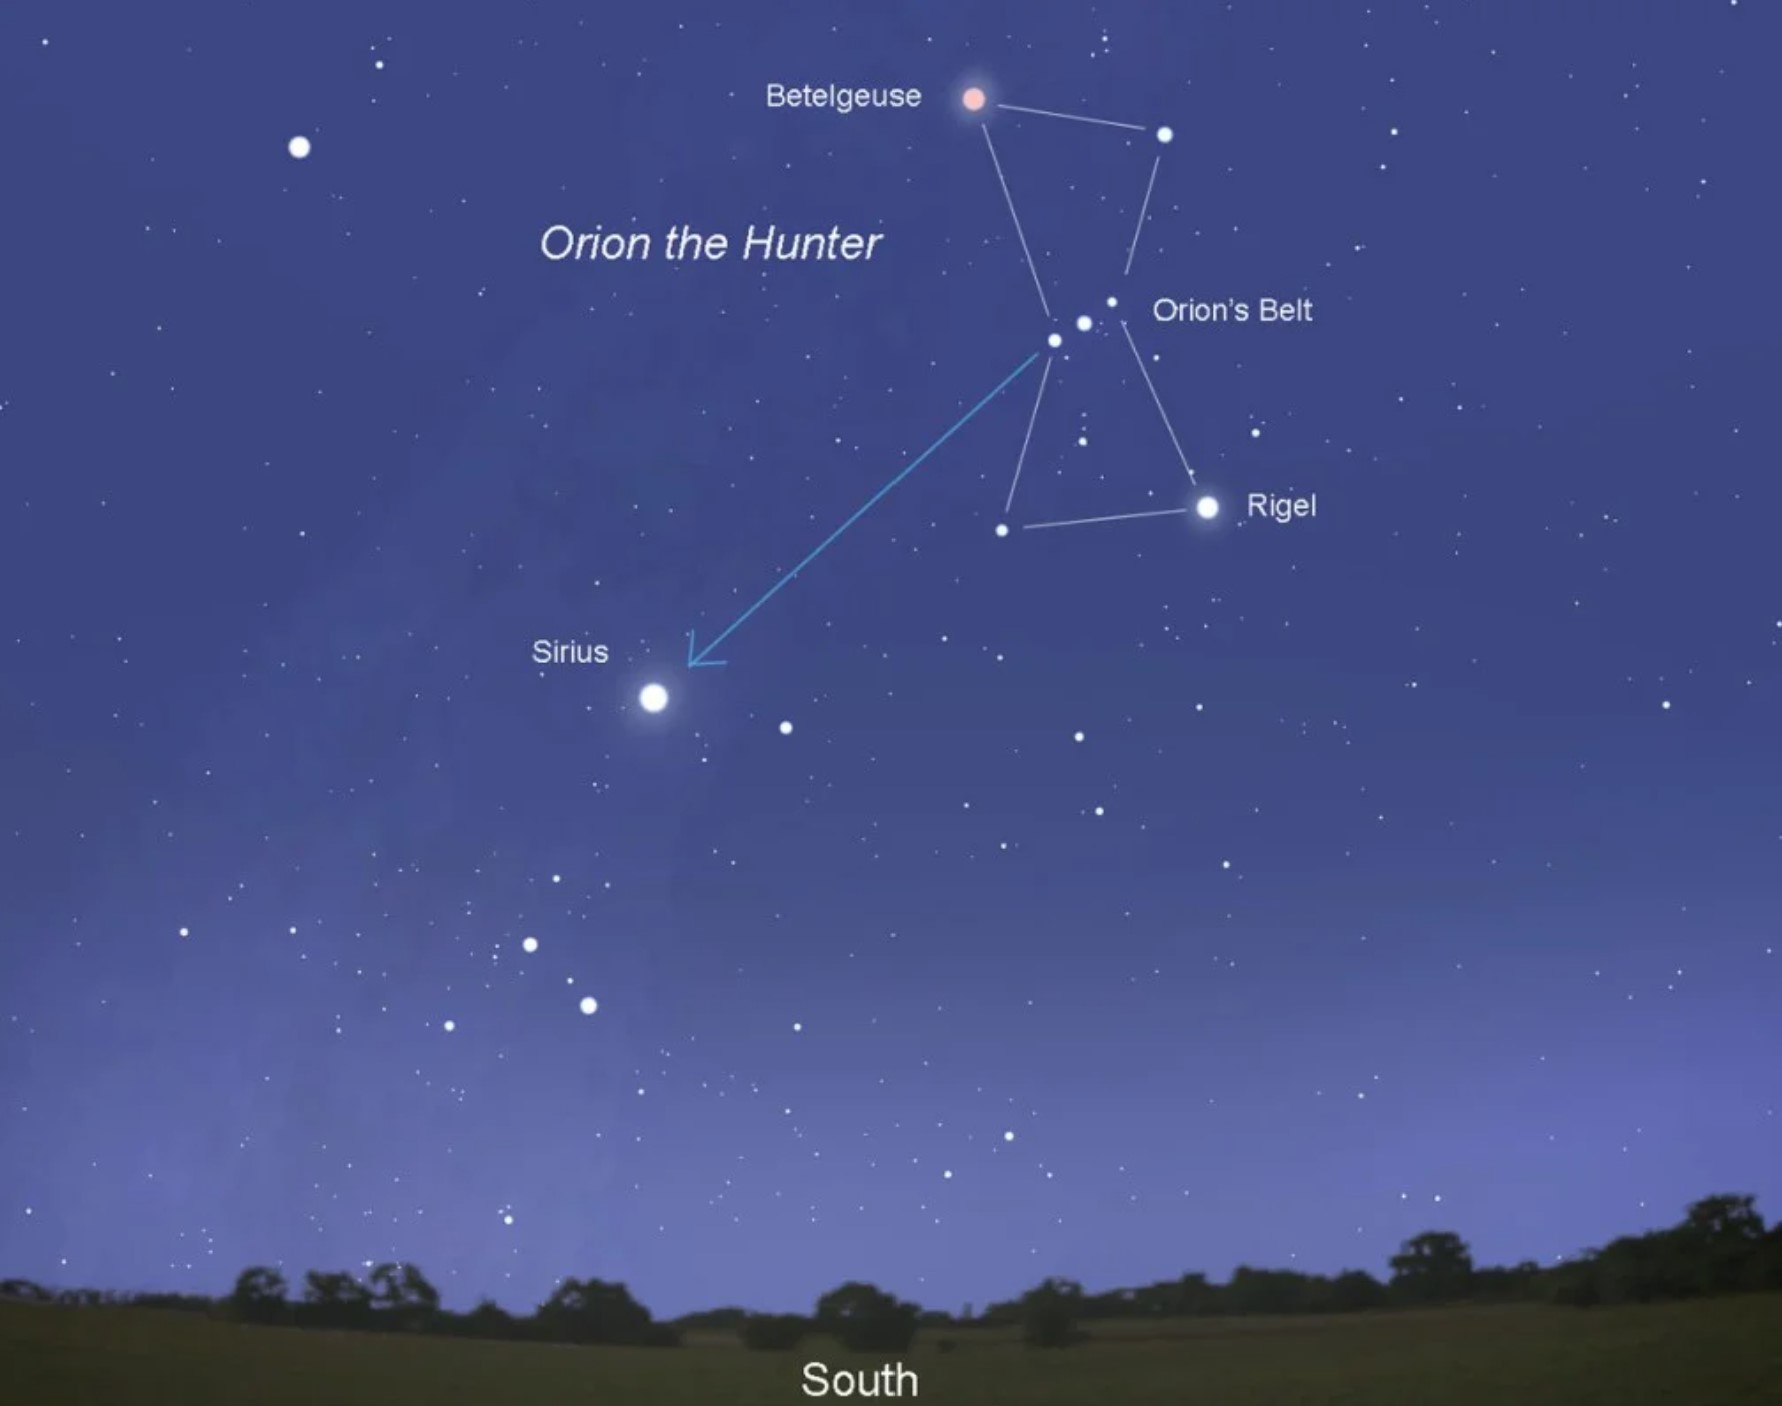 Звезда бетельгейзе на небе фото с земли